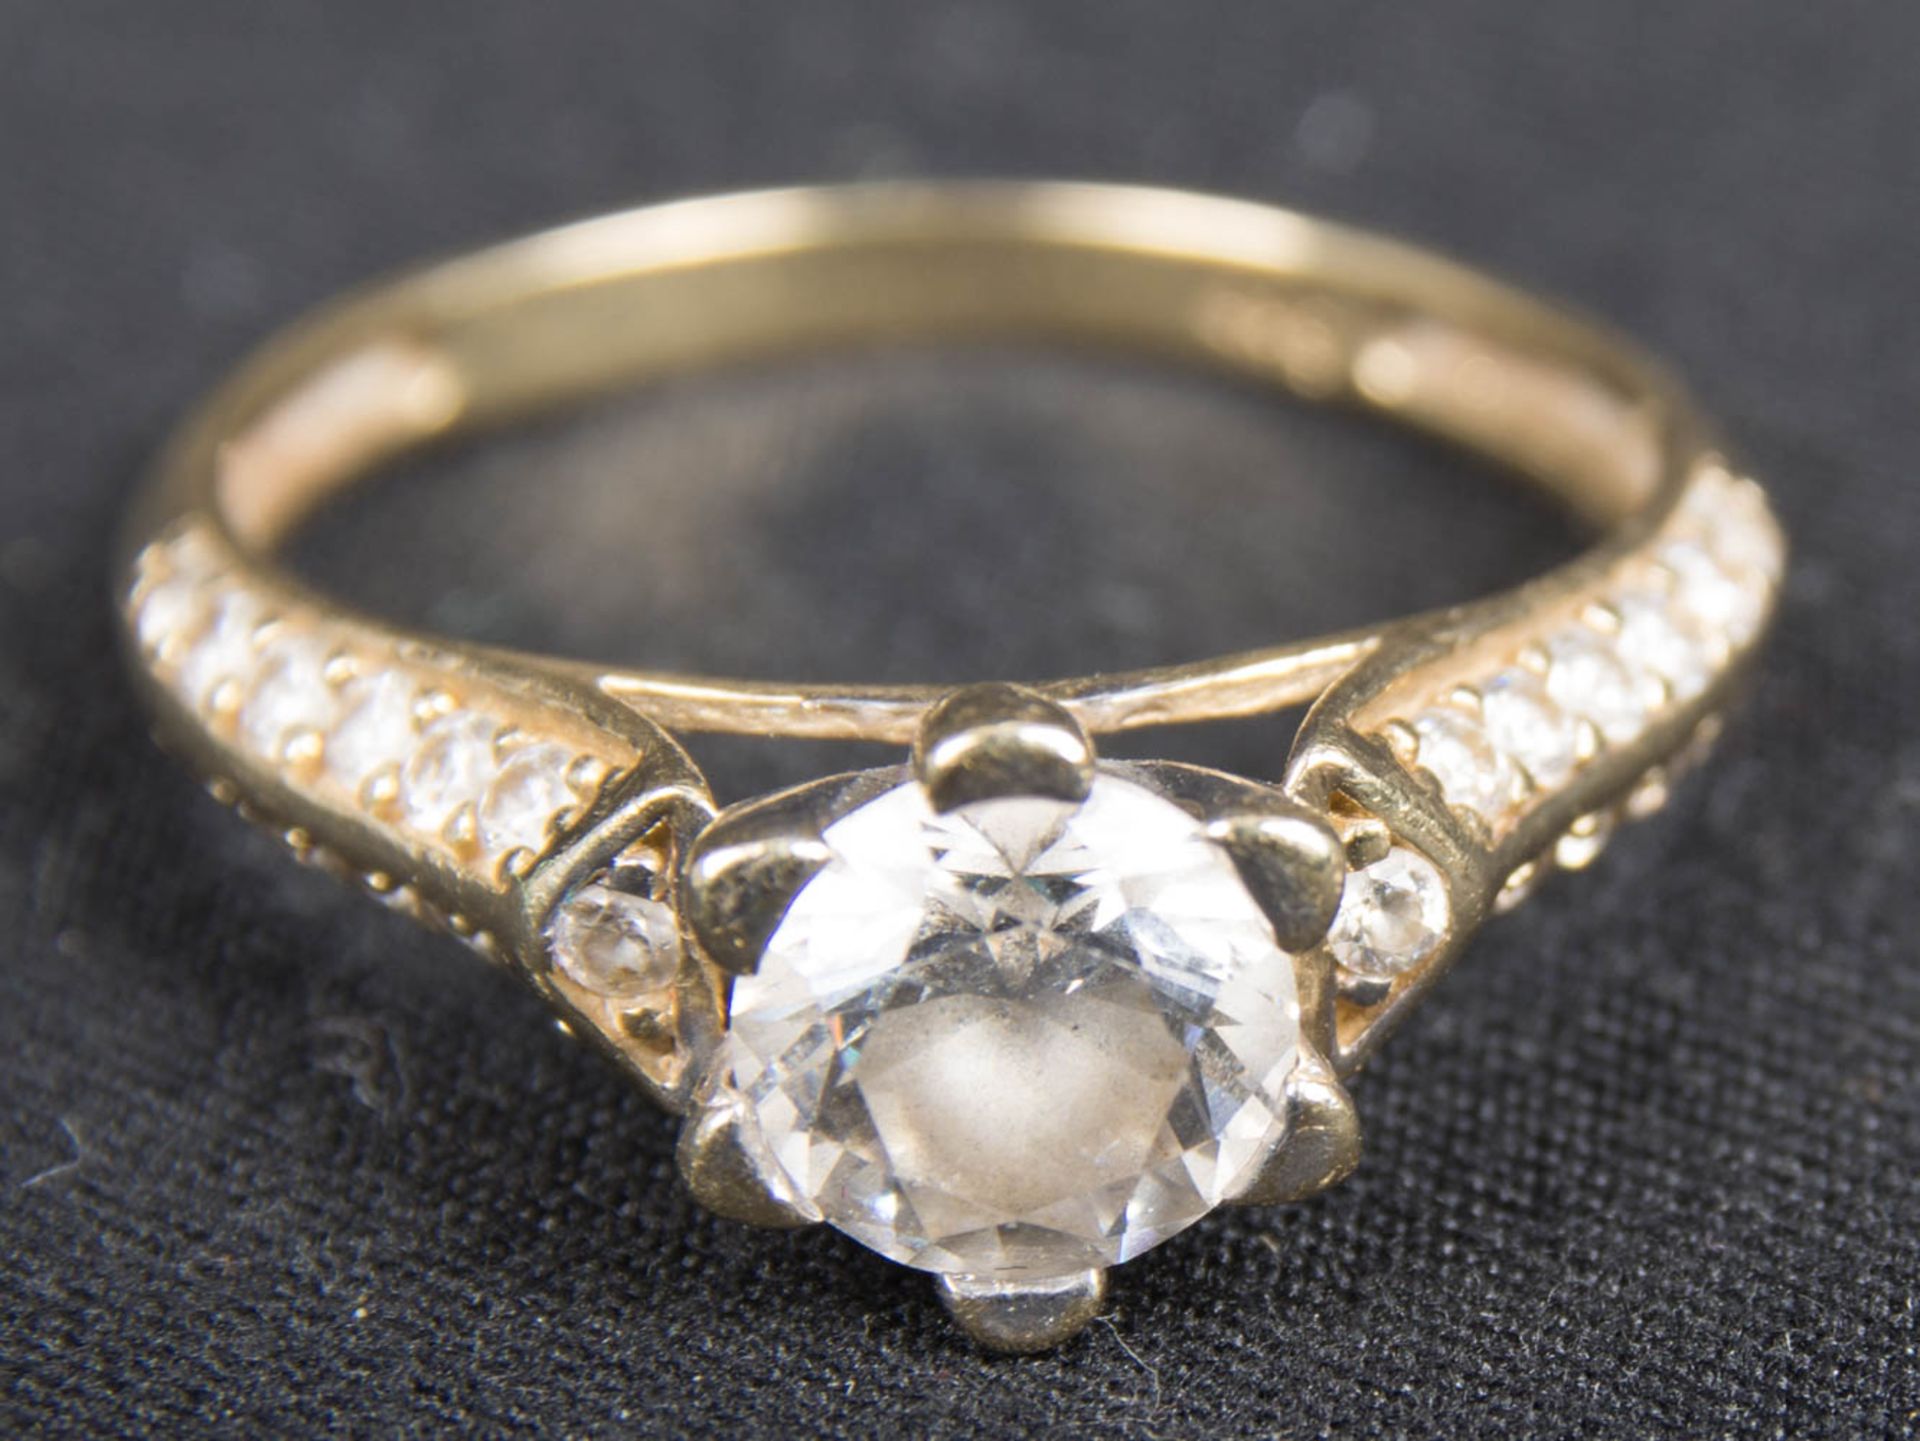 Zarter Ring und Ohrringe mit weißen Farbedelsteinen, 585er Gelbgold. - Image 3 of 6